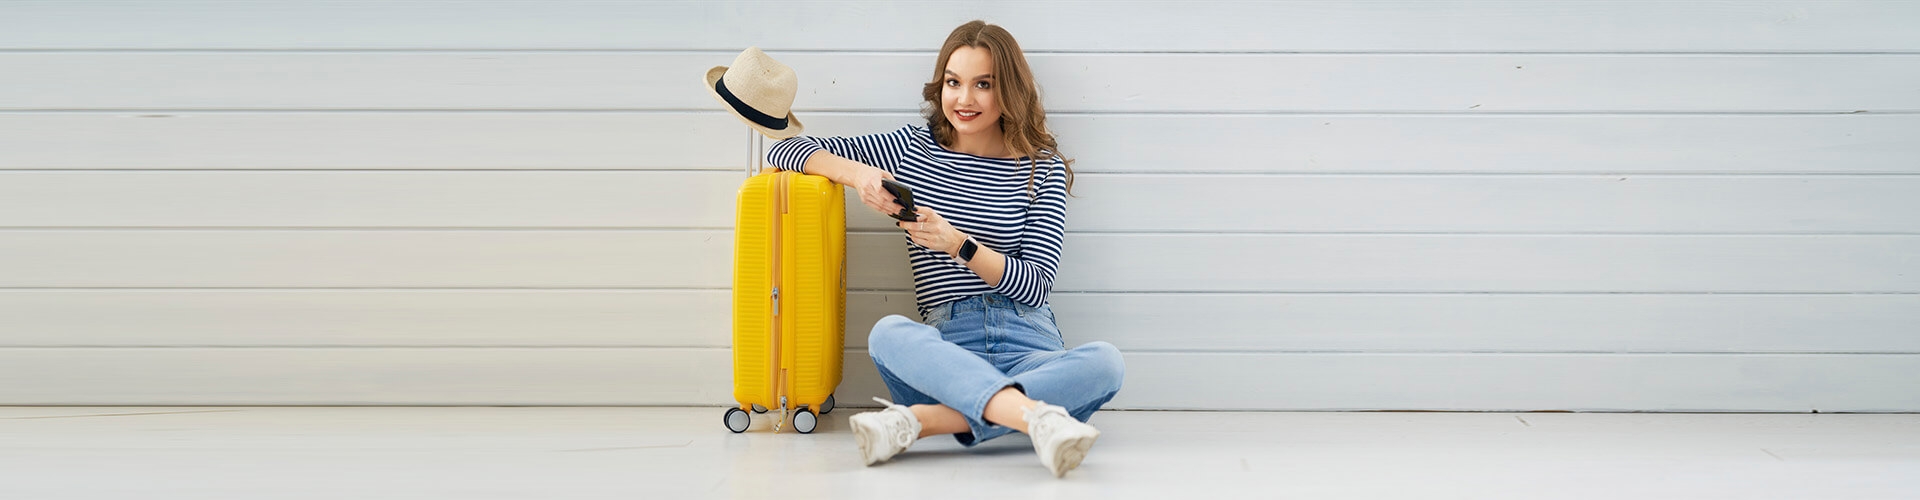 Mujer joven sentada suelo con movil mano junto su maleta y un sombrero preparando viaje - Seguro de viaje Globalcaja